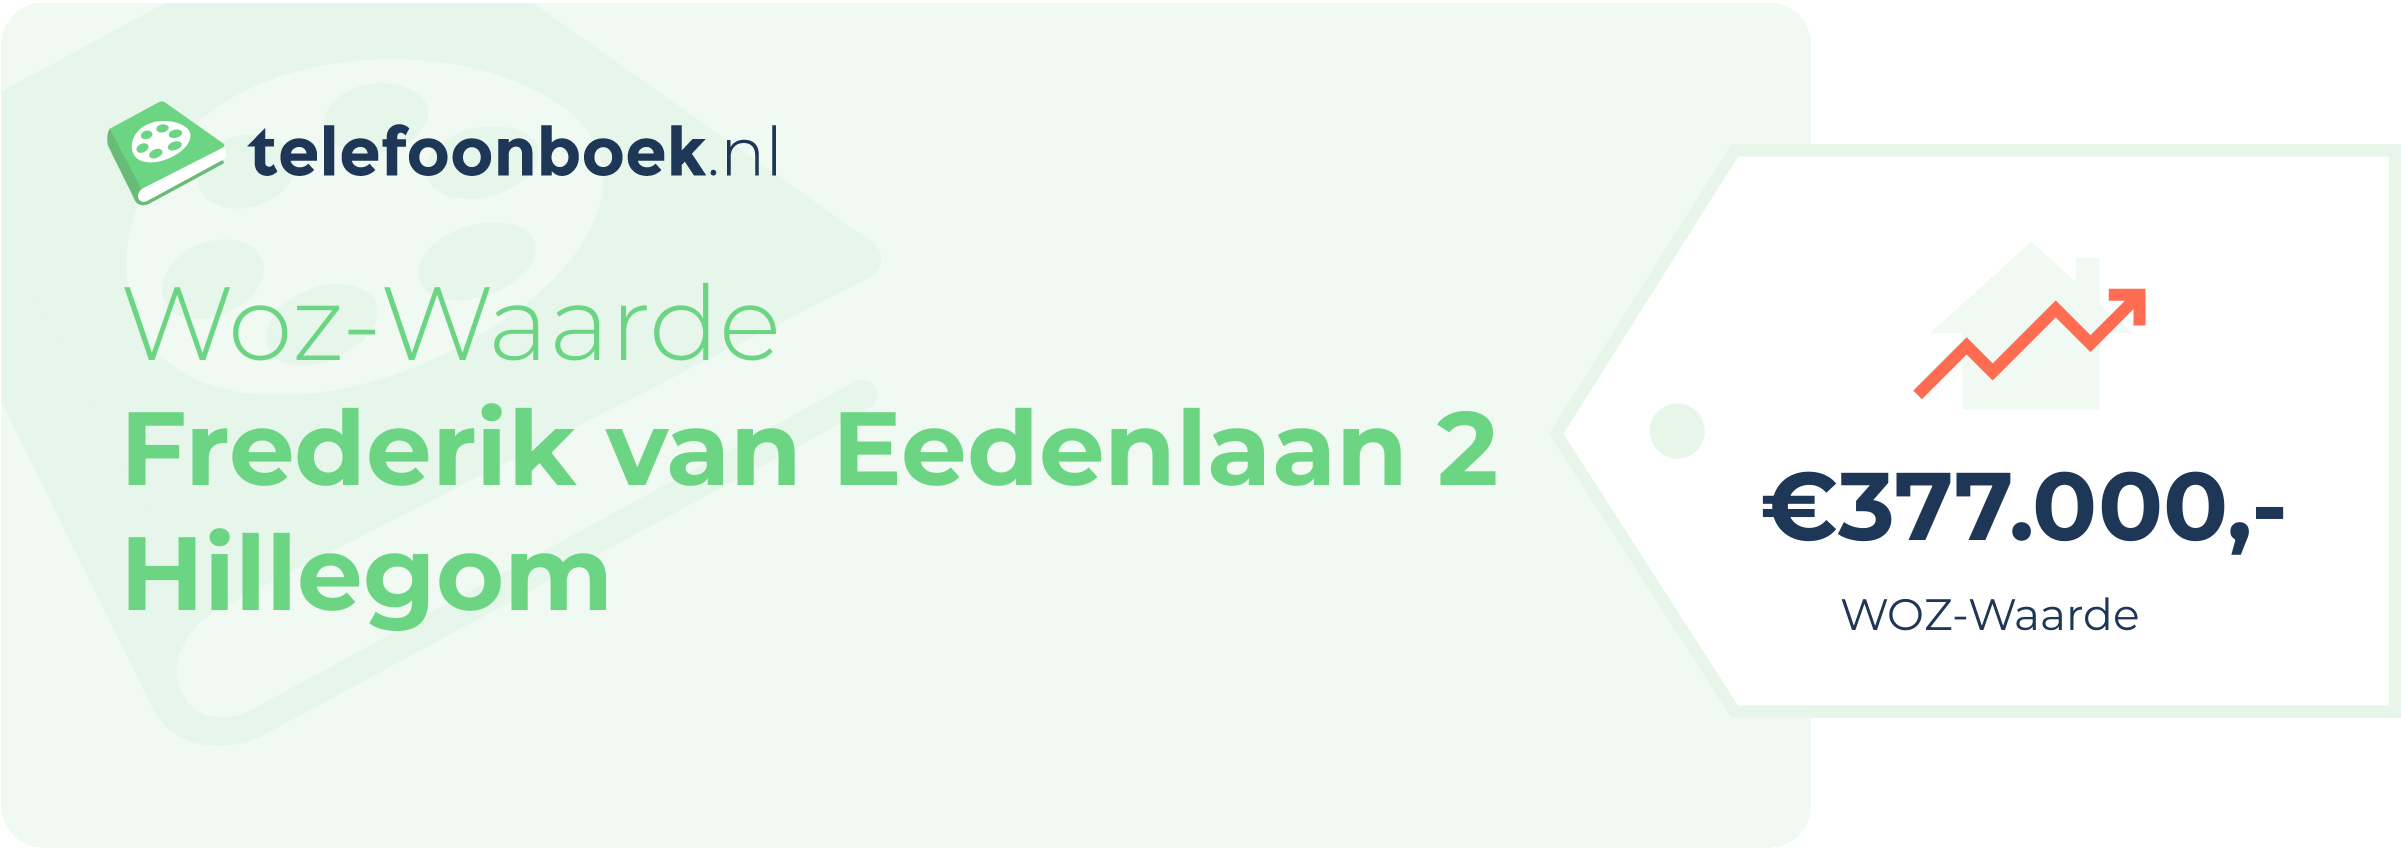 WOZ-waarde Frederik Van Eedenlaan 2 Hillegom